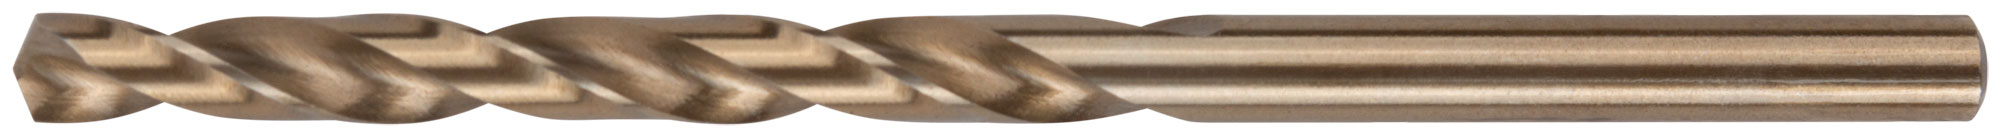 Сверло по металлу Cutop Profi с кобальтом 5%, 4,8 x 86 мм (10 шт)